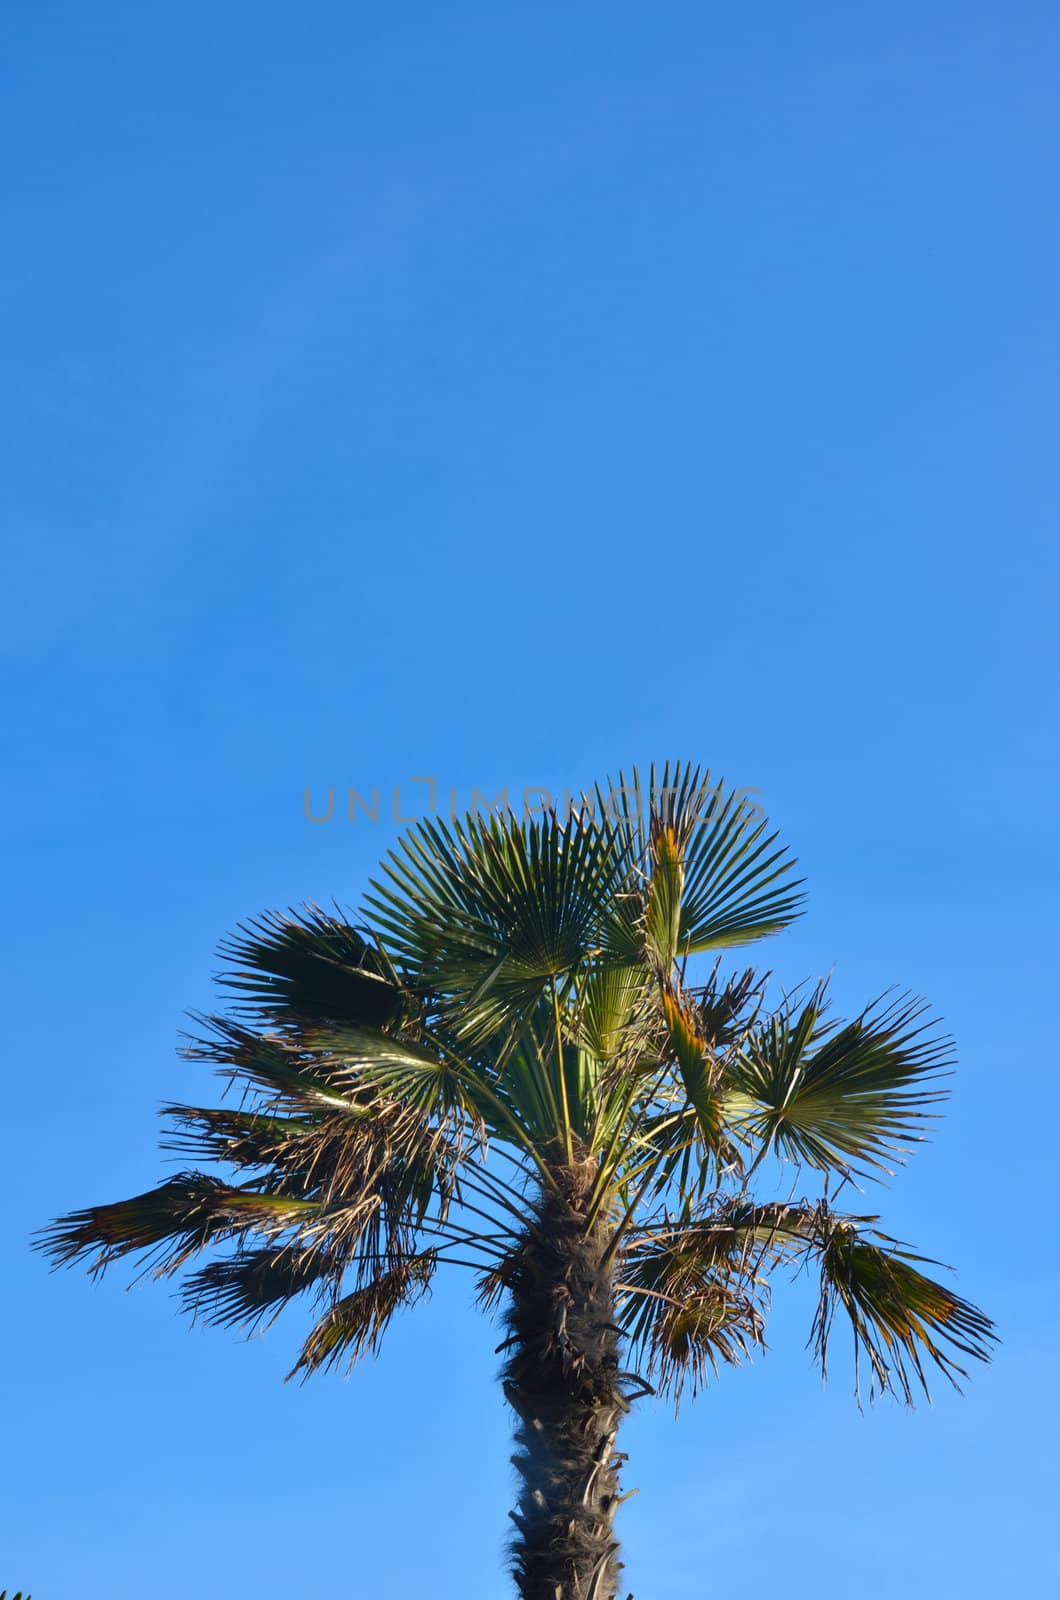 Palm tree in clear blue sky by pauws99